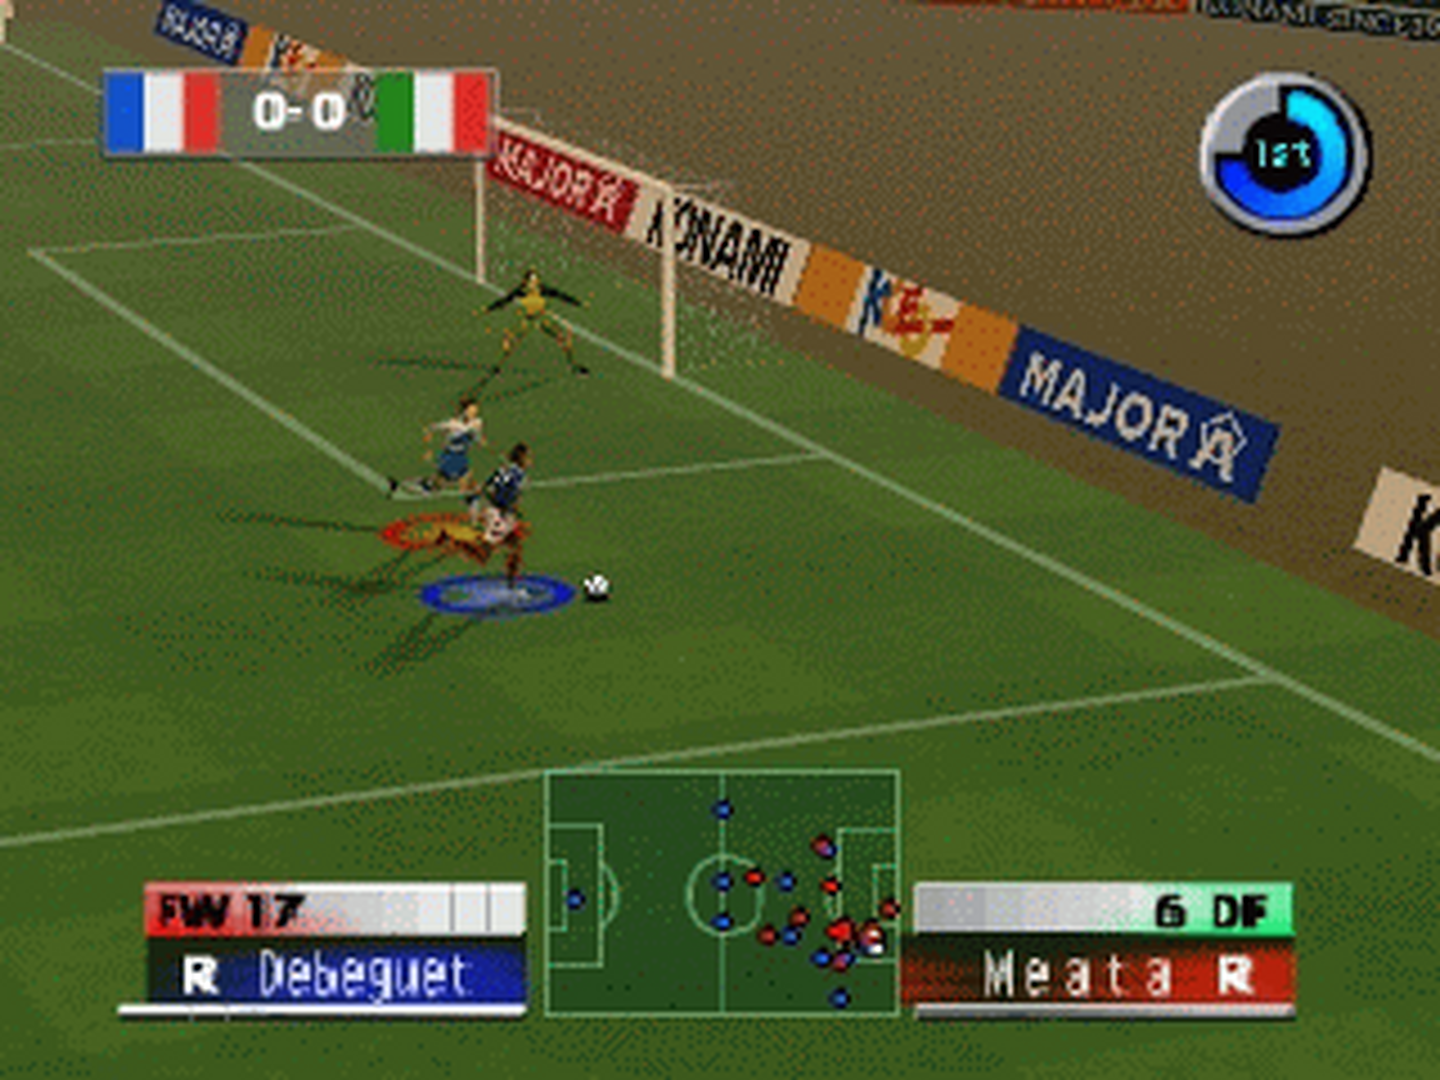 N64 GameBase International_Superstar_Soccer_2000_(E)_(M2)_(Eng-Ger) Konami 2000